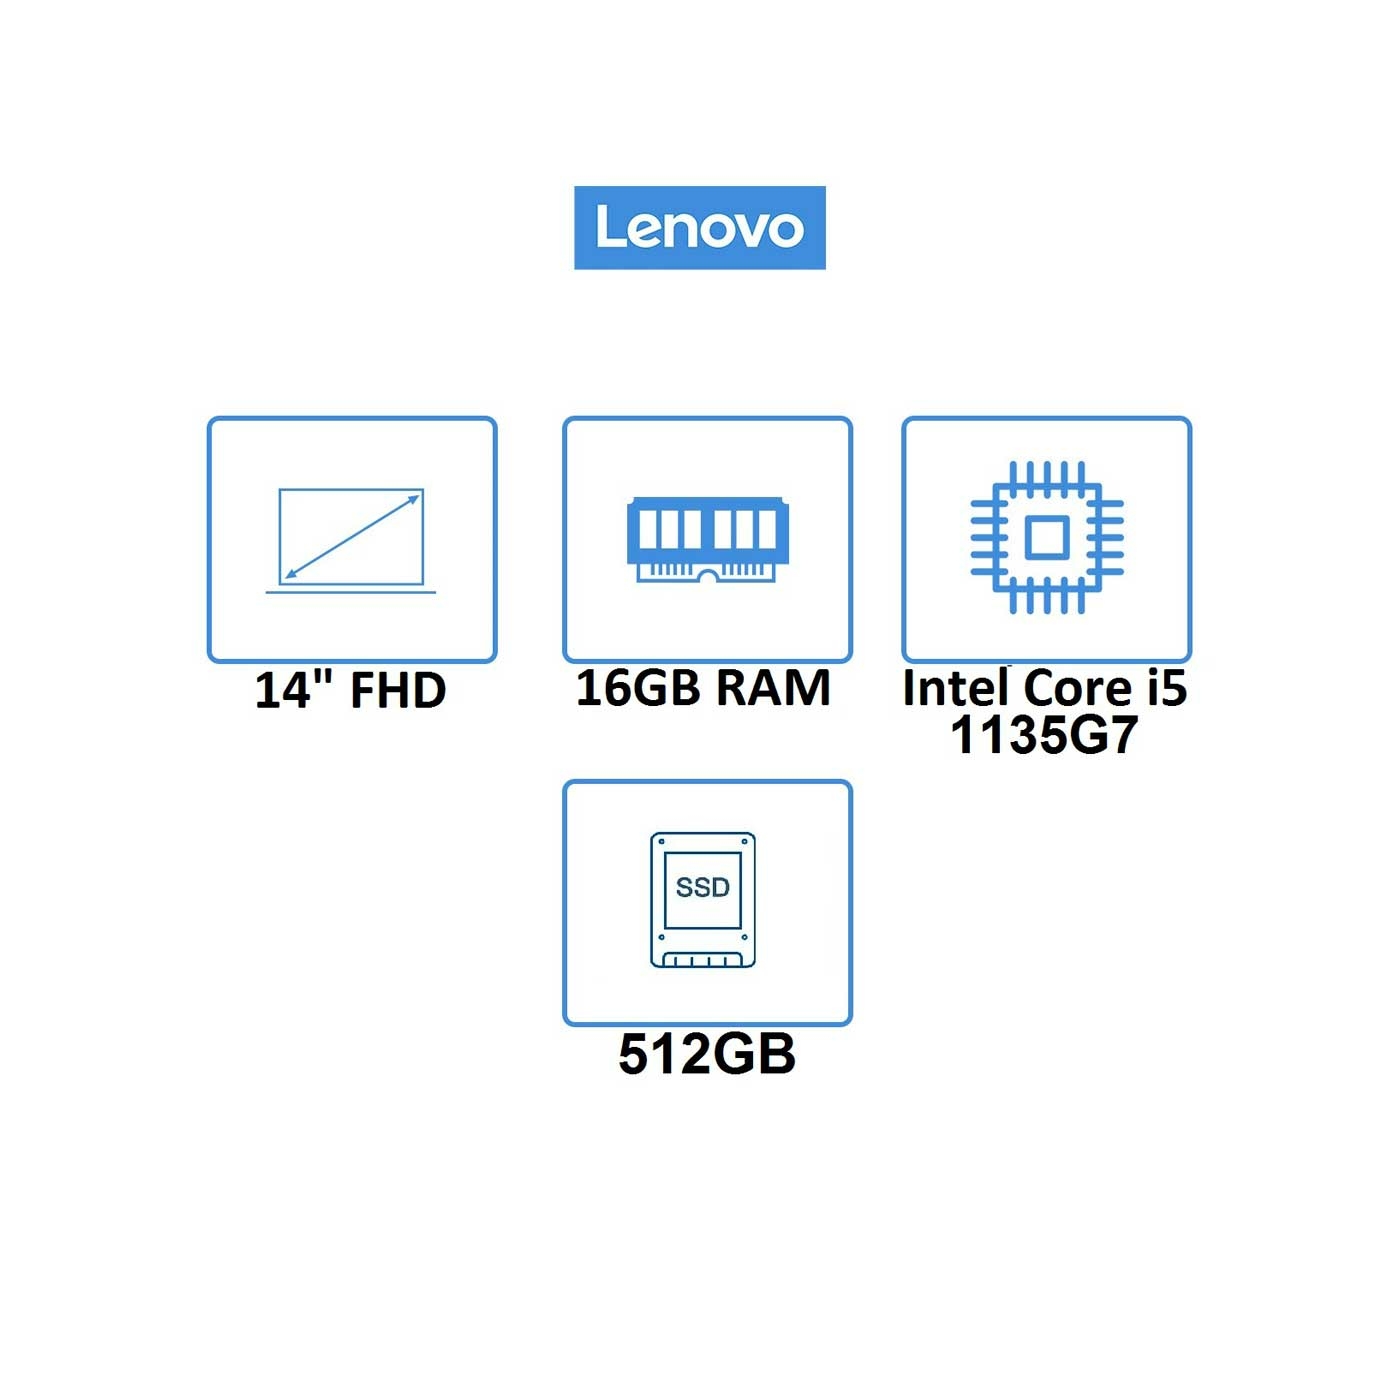 Computador Portátil LENOVO 14" Pulgadas Yoga Slim 7 - Intel Core i5 - RAM 16GB - Disco SSD 512GB - Gris